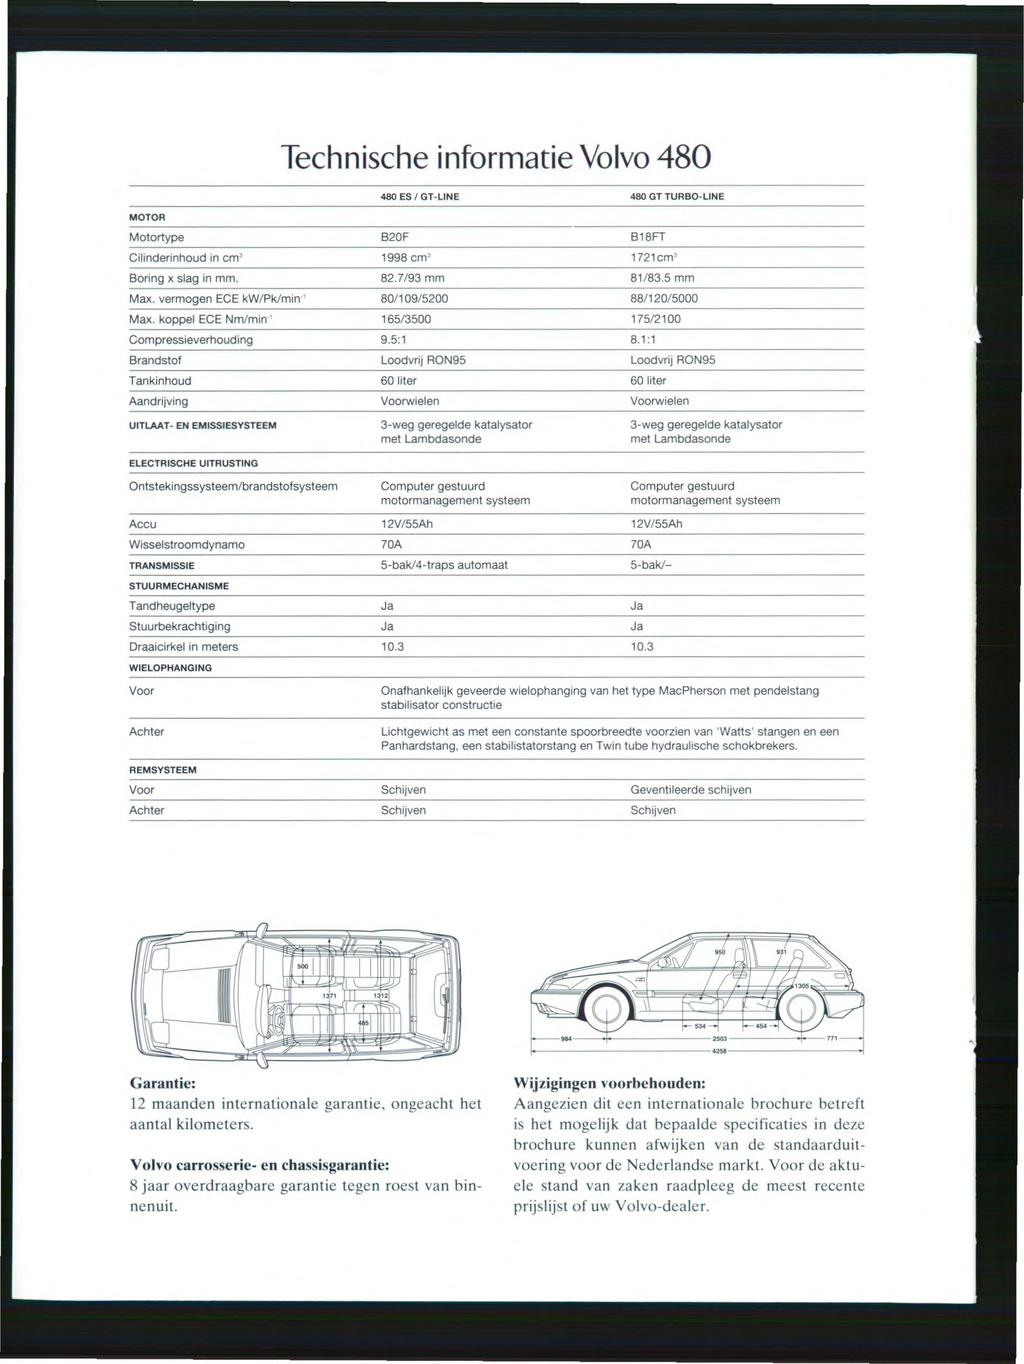 Technische informatie Volvo 480 480 ES/GT-liNE 480 GT TURBO-LiNE MOTOR Motortype 820F Cilinderinhoud in cm 3 '998 cm' Boring x slag in mmo 82.7193 mm Max. vermogen ECE kw/pkimin- 1 80/109/5200 Max.